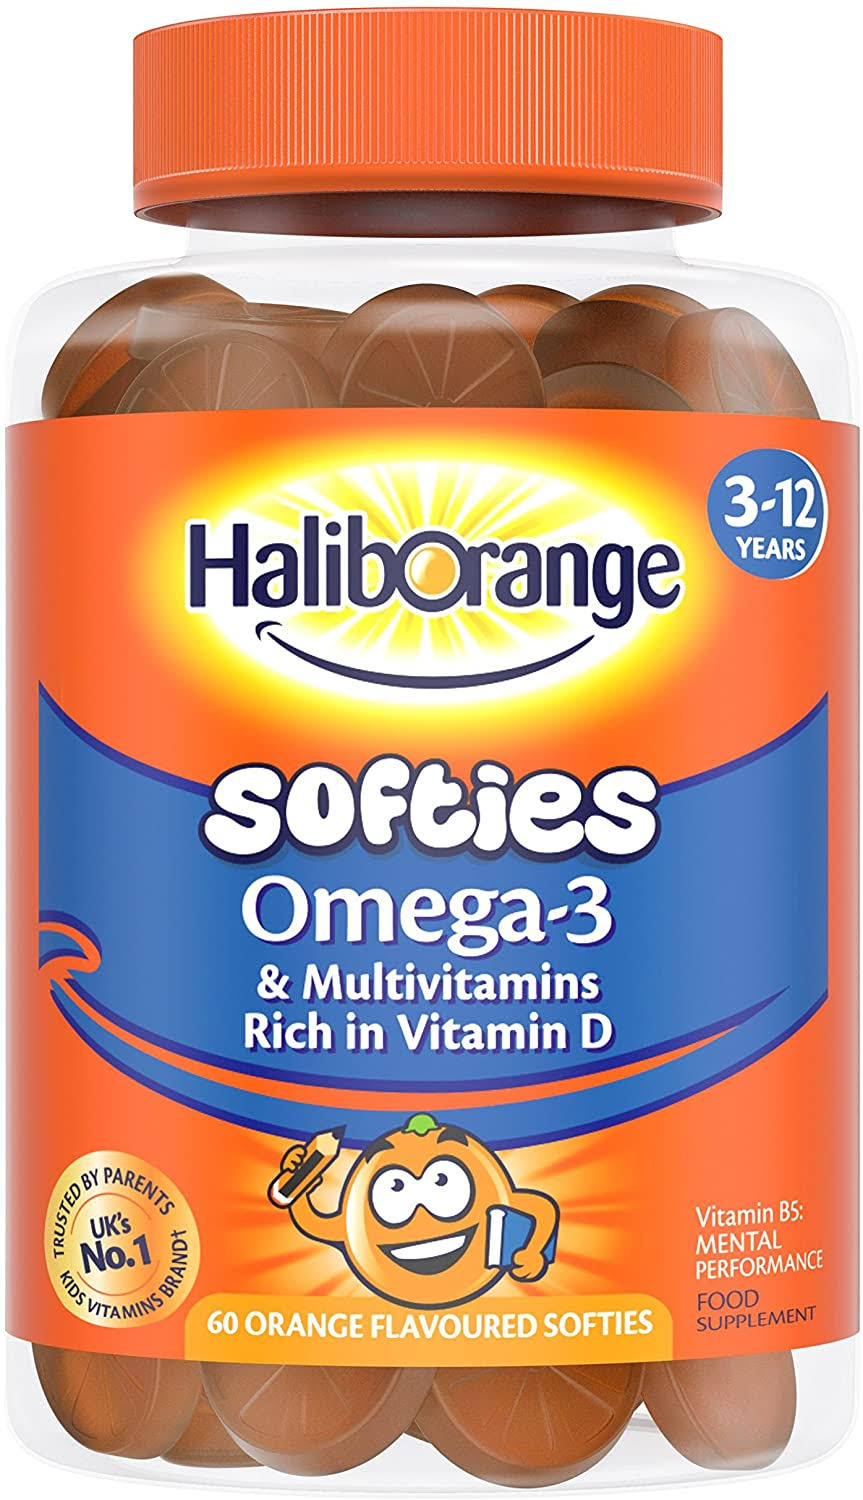 Haliborange Omega 3 & Multivitamins - 60 Orange Flavoured Softies, 3-12 Years